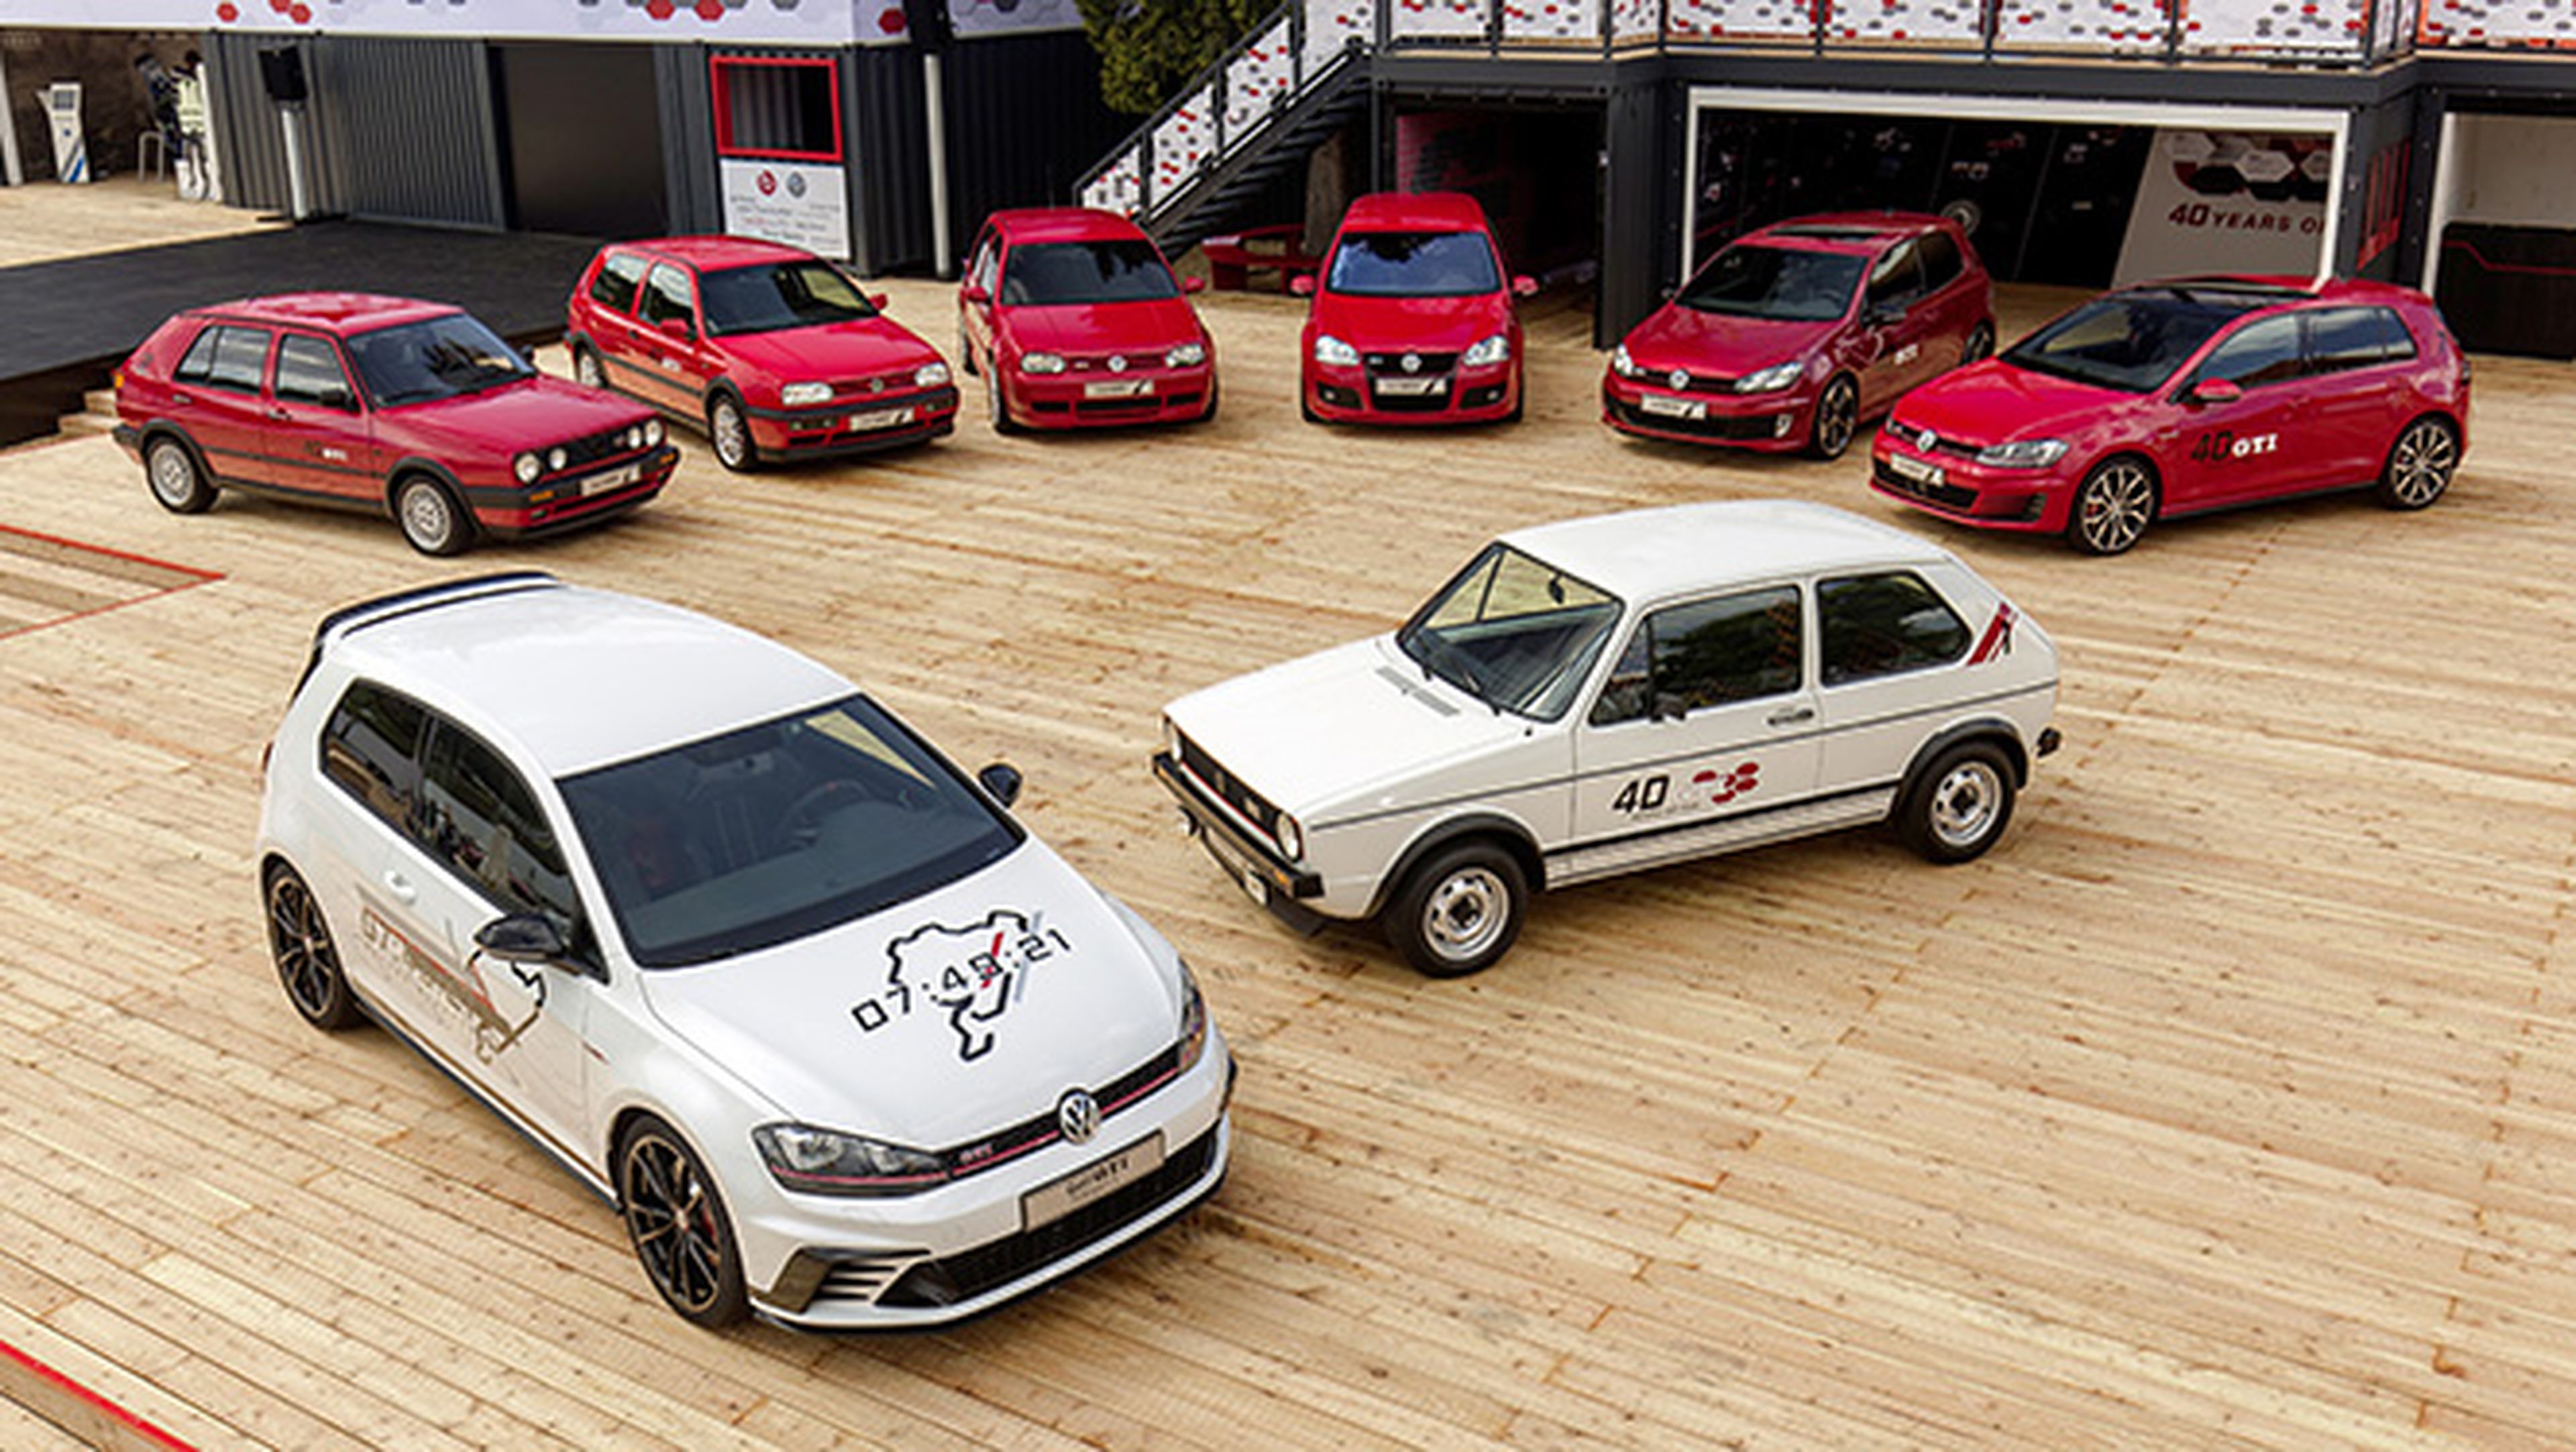 VW organiza la mayor concentración de Golf GTI de España